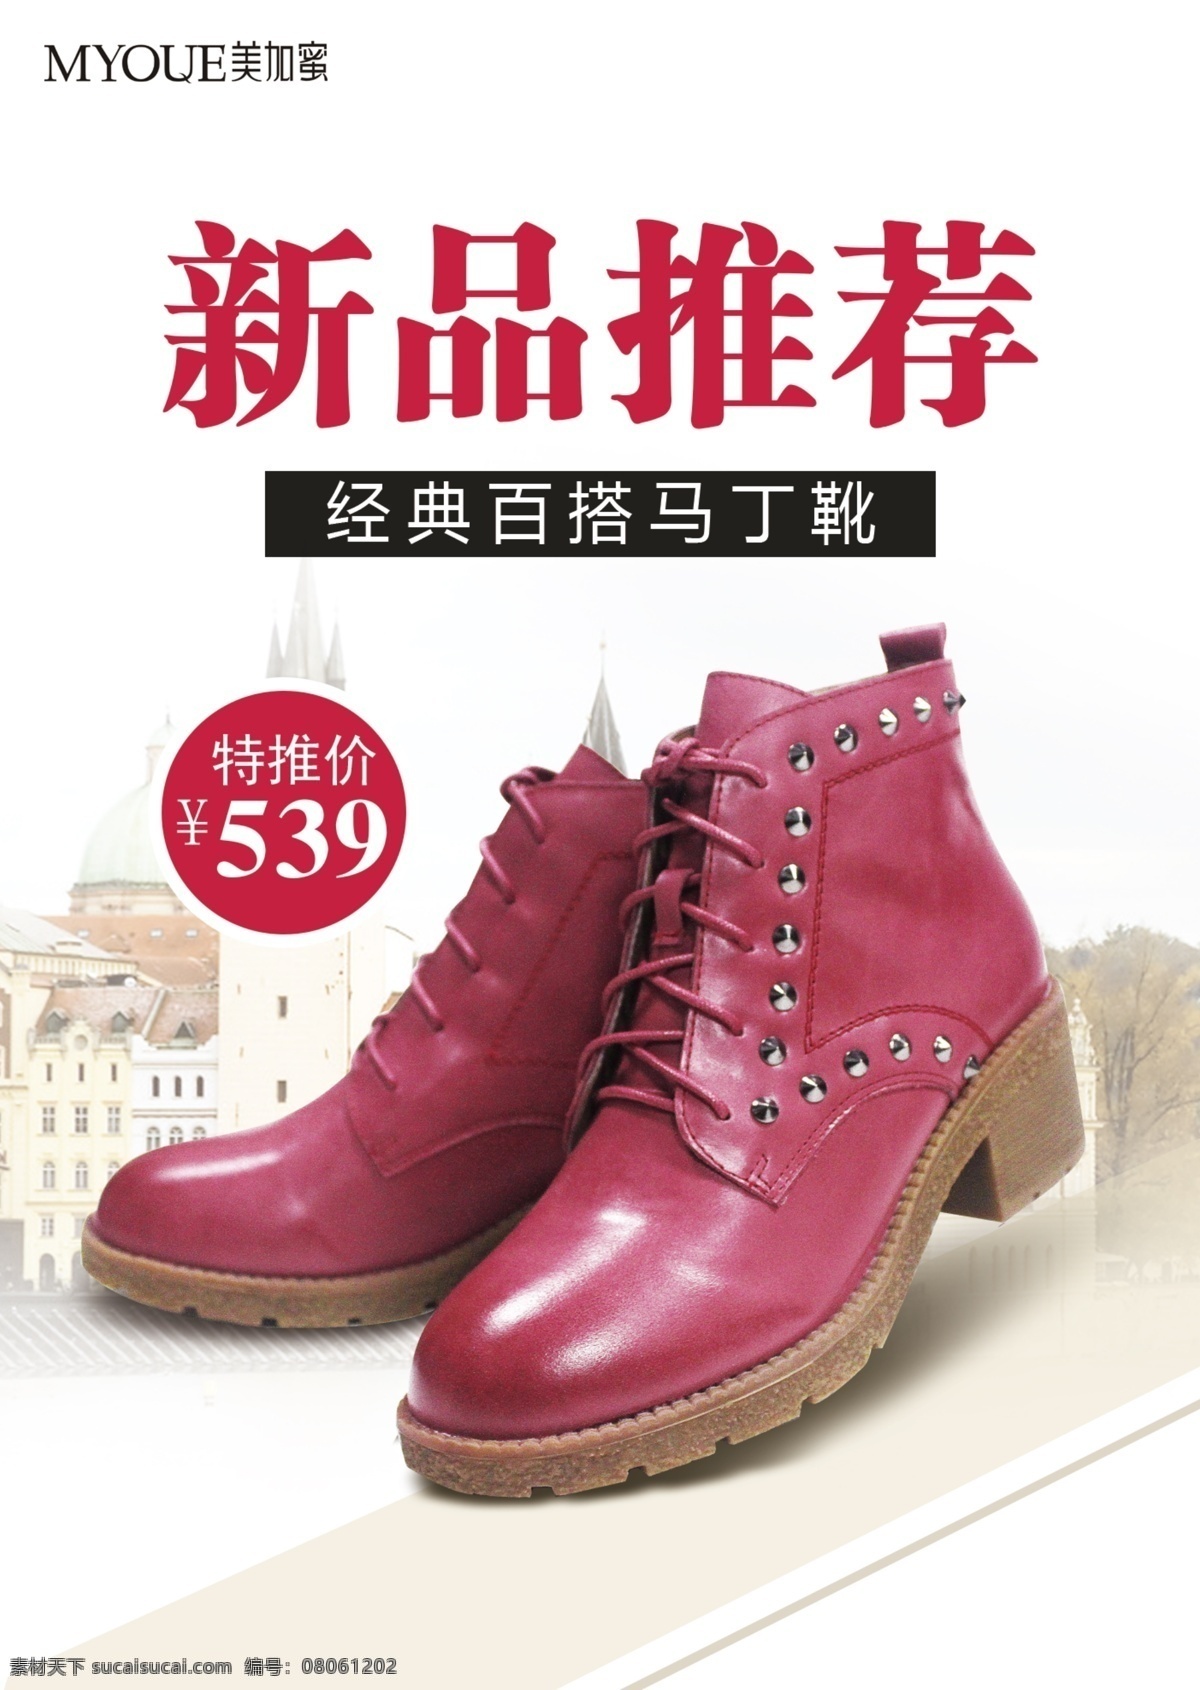 马丁 靴 新品推荐 海报 宣传图设计 马丁靴 宣传图 白色